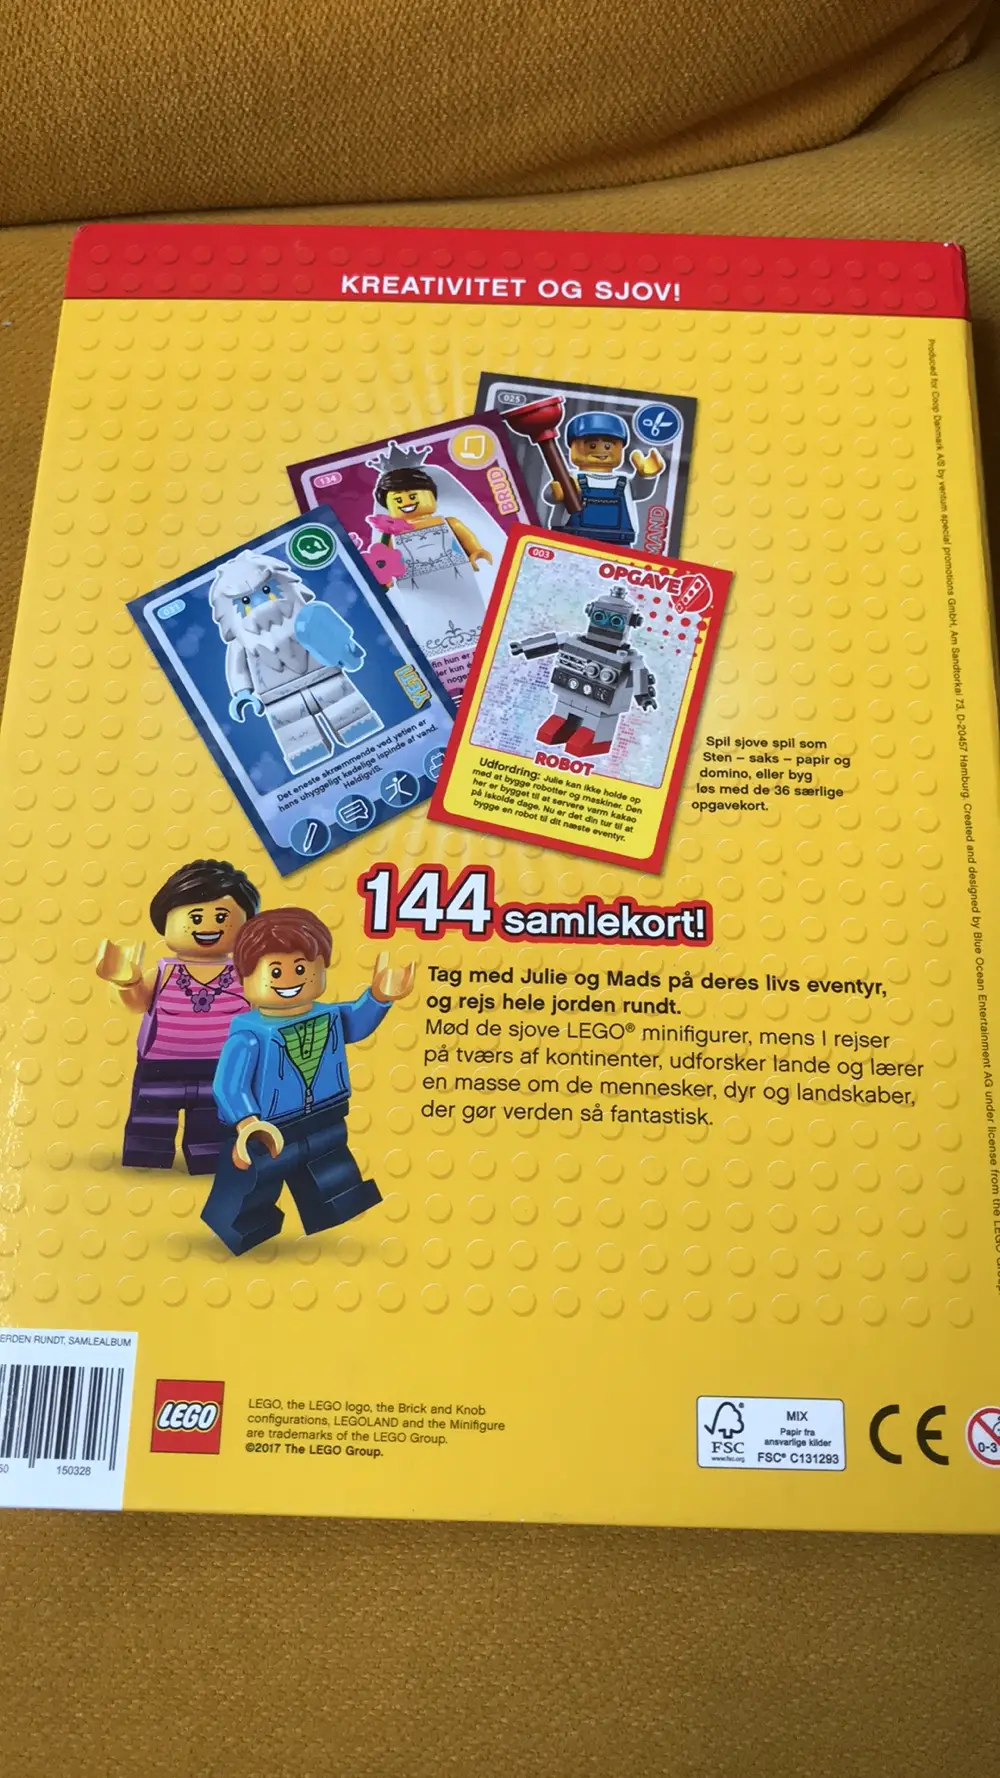 Køb Lego Samlealbum samlekort af Ditte Reshopper Shop secondhand til børn, mor og bolig